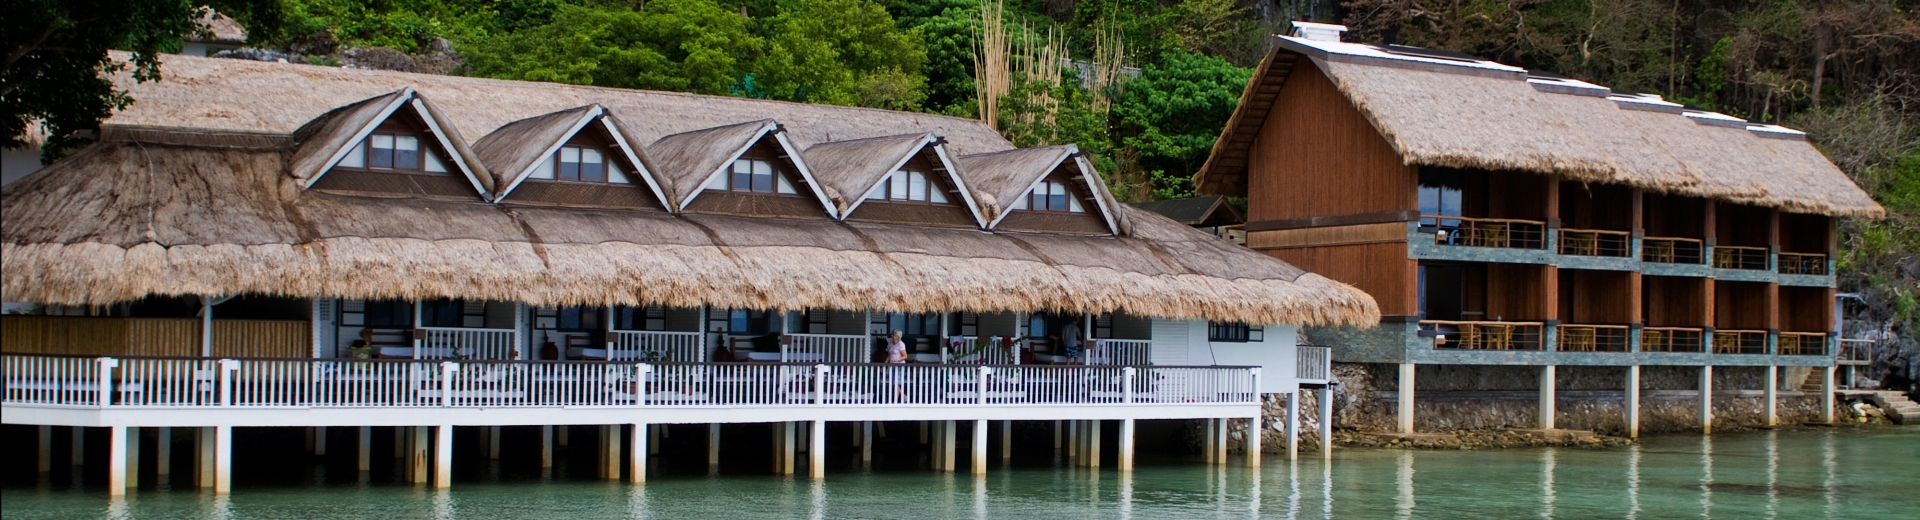 愛妮島旅遊飯店推薦-明尼諾渡假村